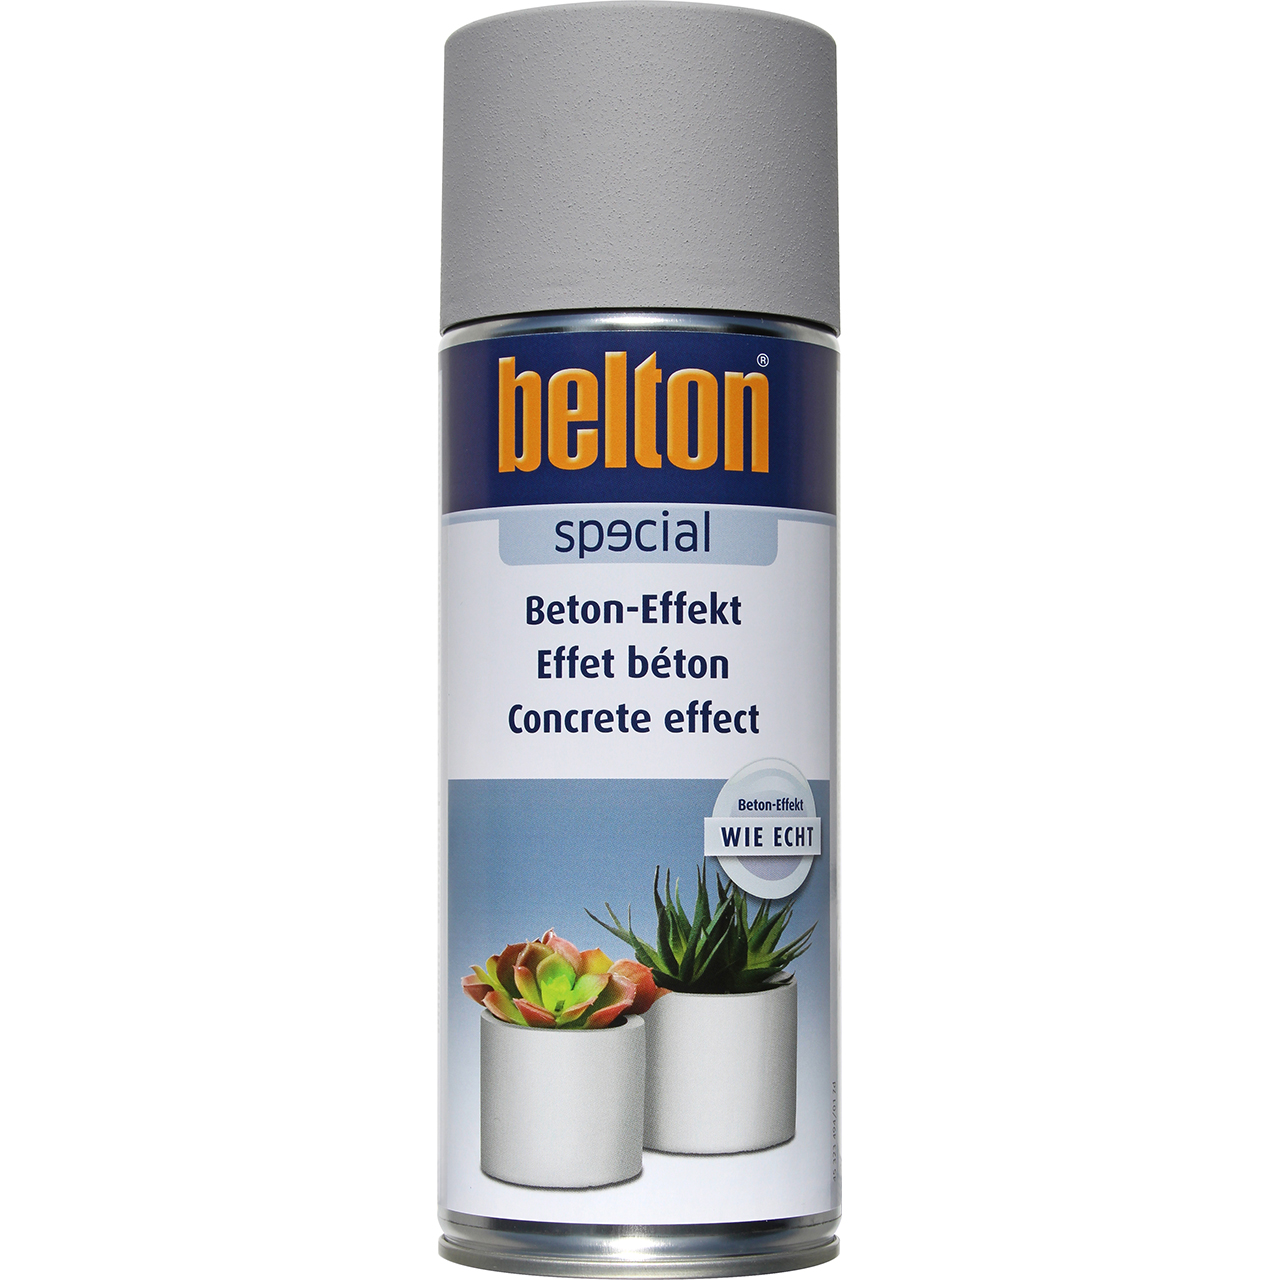 belton Special Beton-Effekt, 400ml